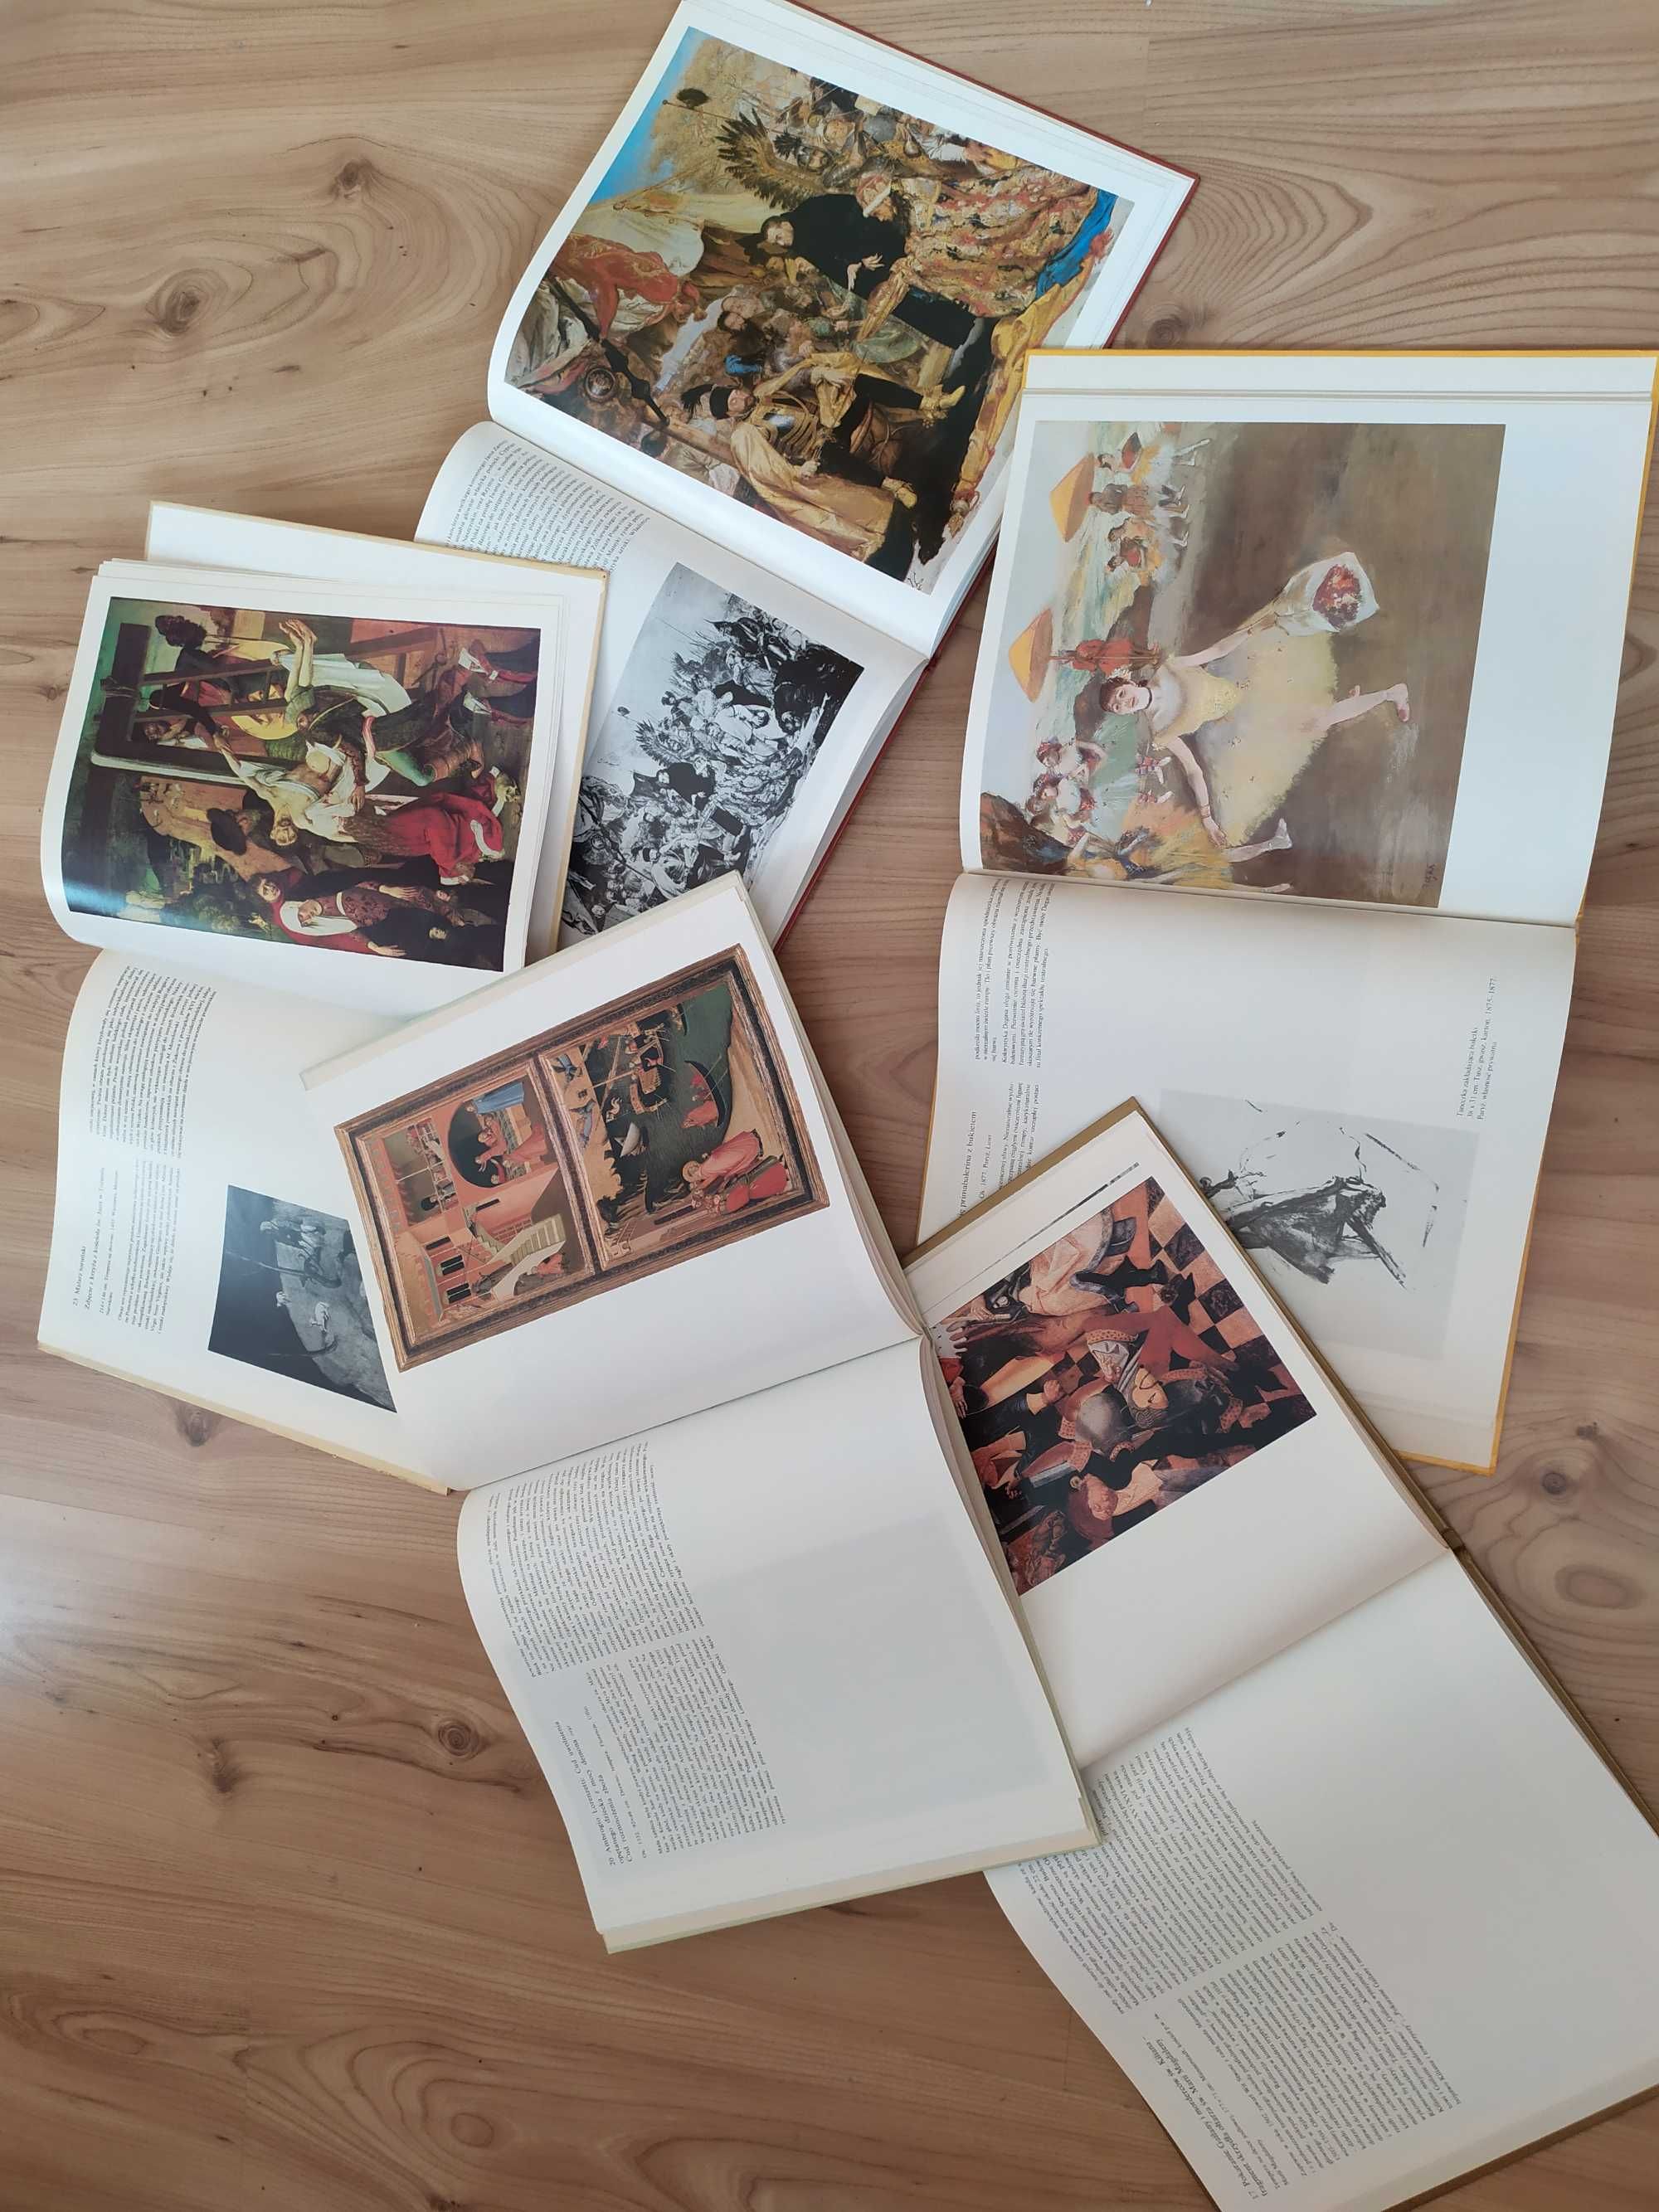 W kręgu sztuki, Matejko, Witt Stwosz, Lorenzetti, Edgar Degas, całość